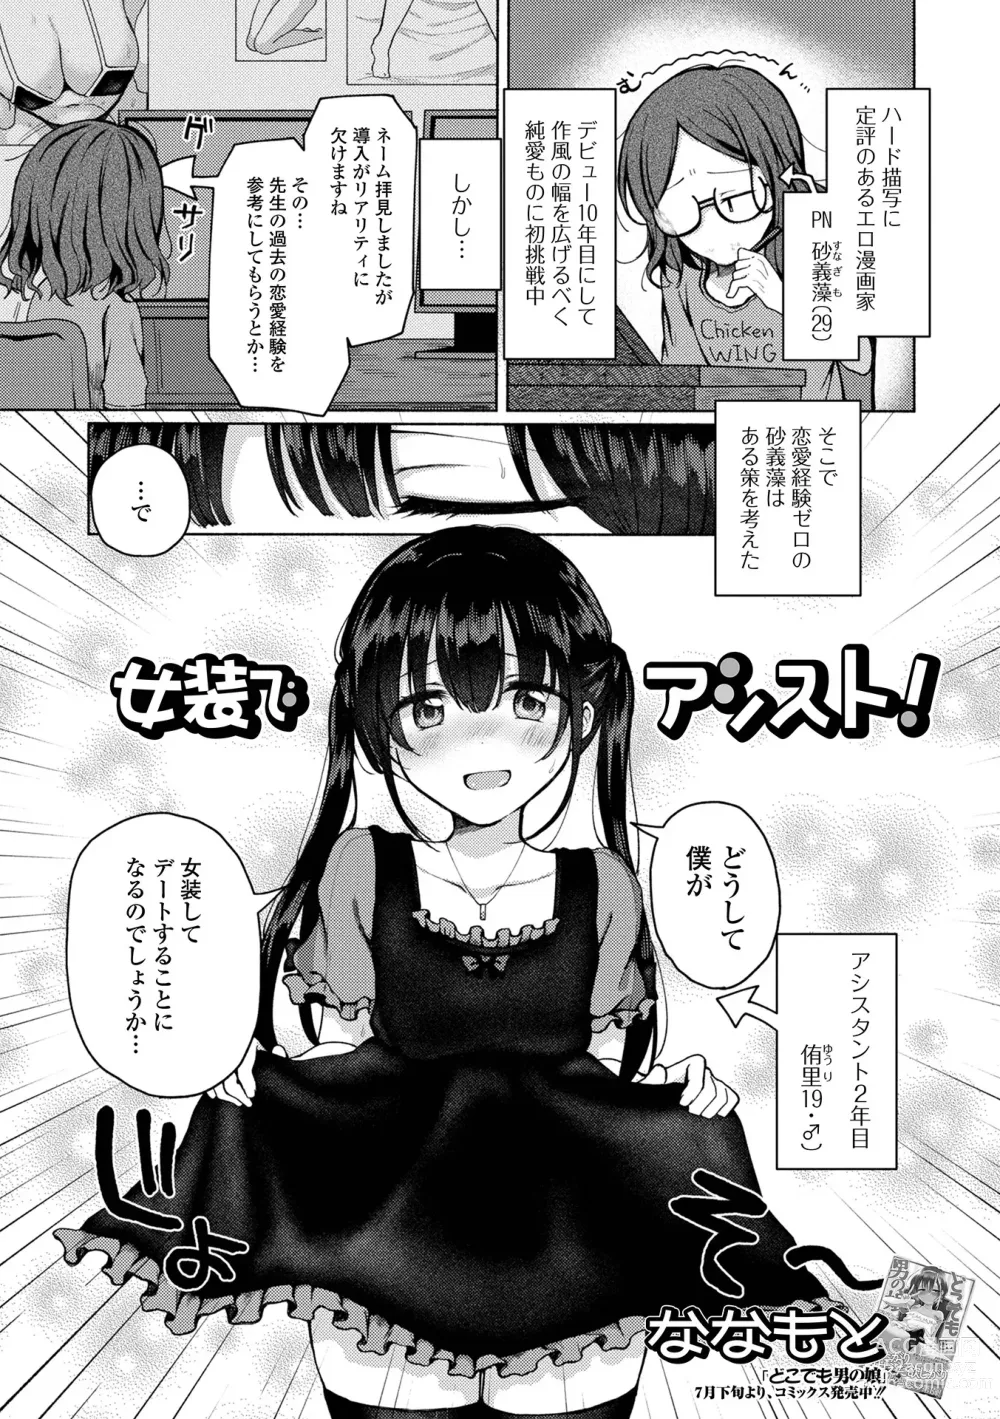 Page 23 of manga Gekkan Web Otoko no Ko-llection! S Vol. 88